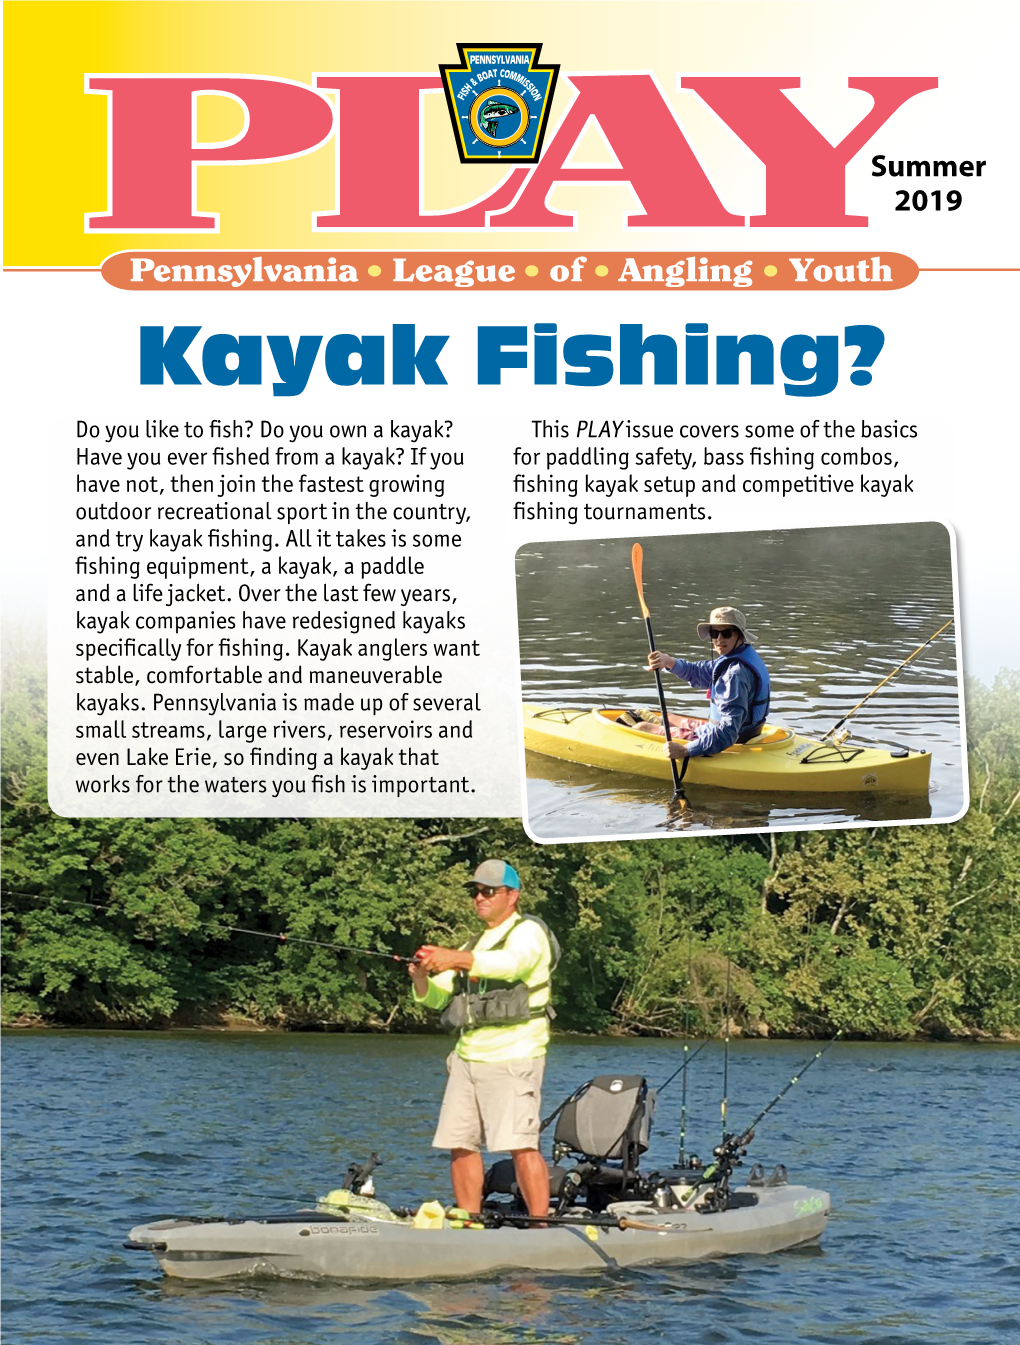 Kayak Fishing?